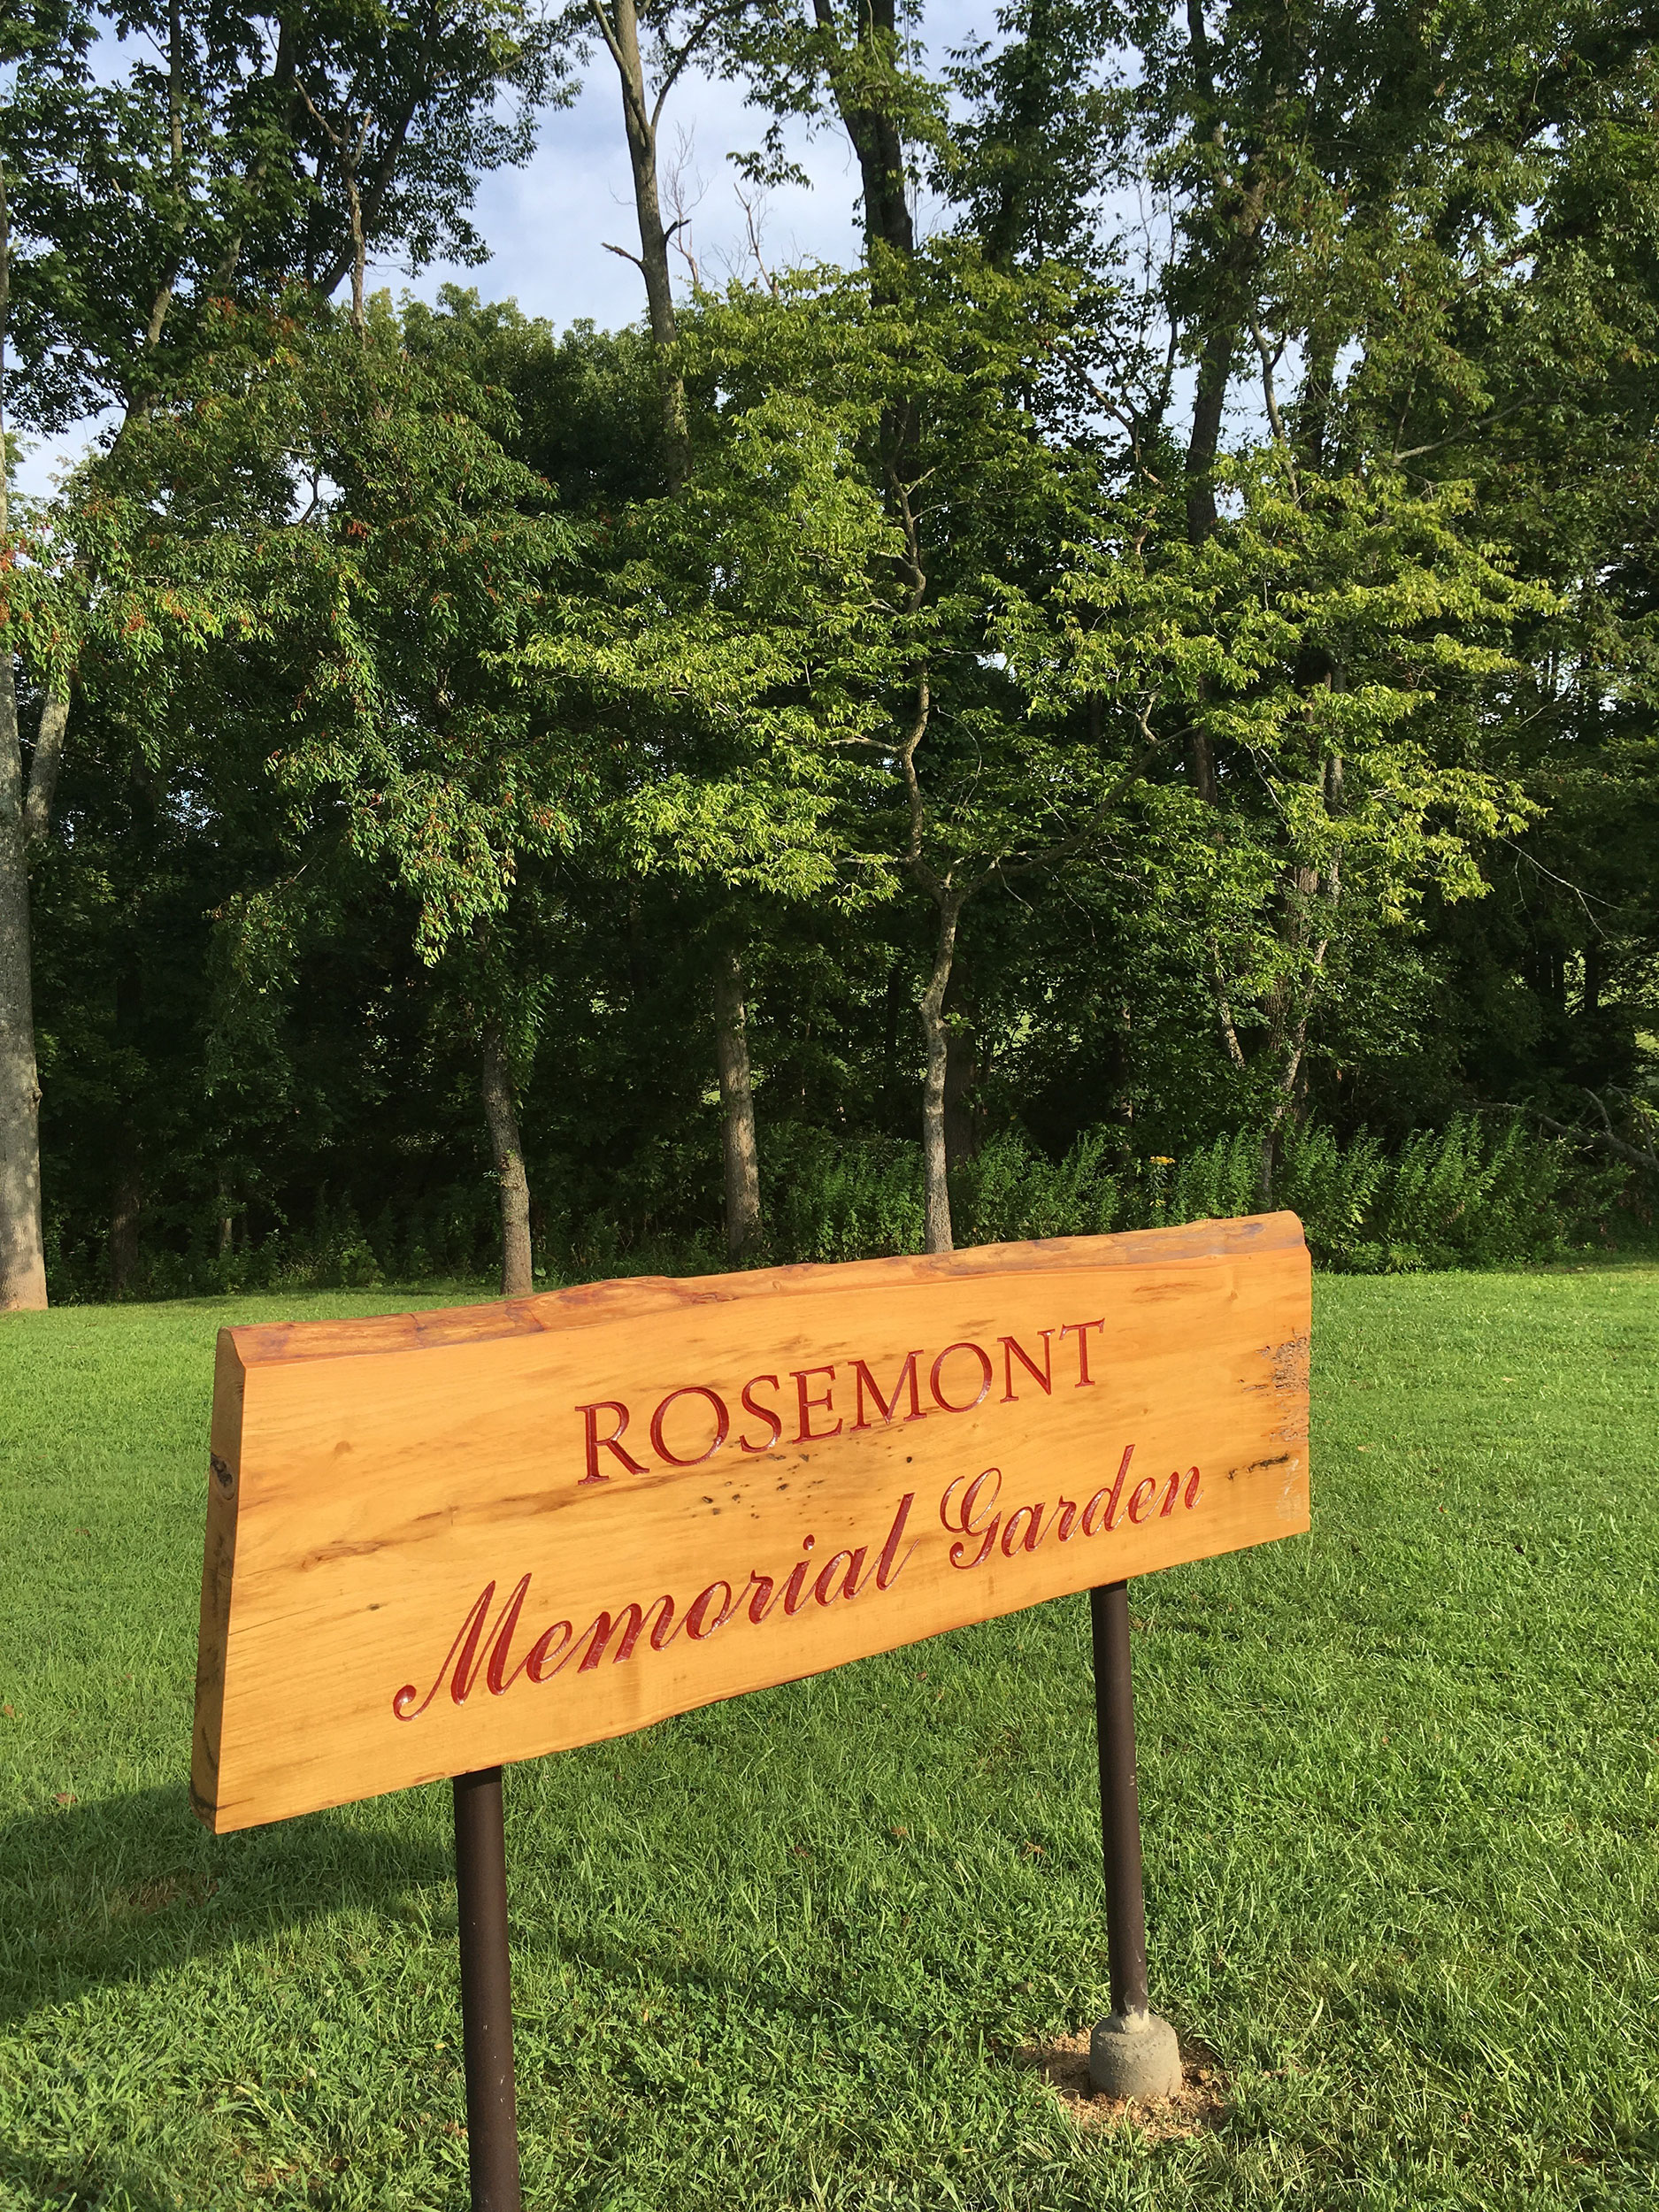 Rosemont Memorial Garden - Green Burials